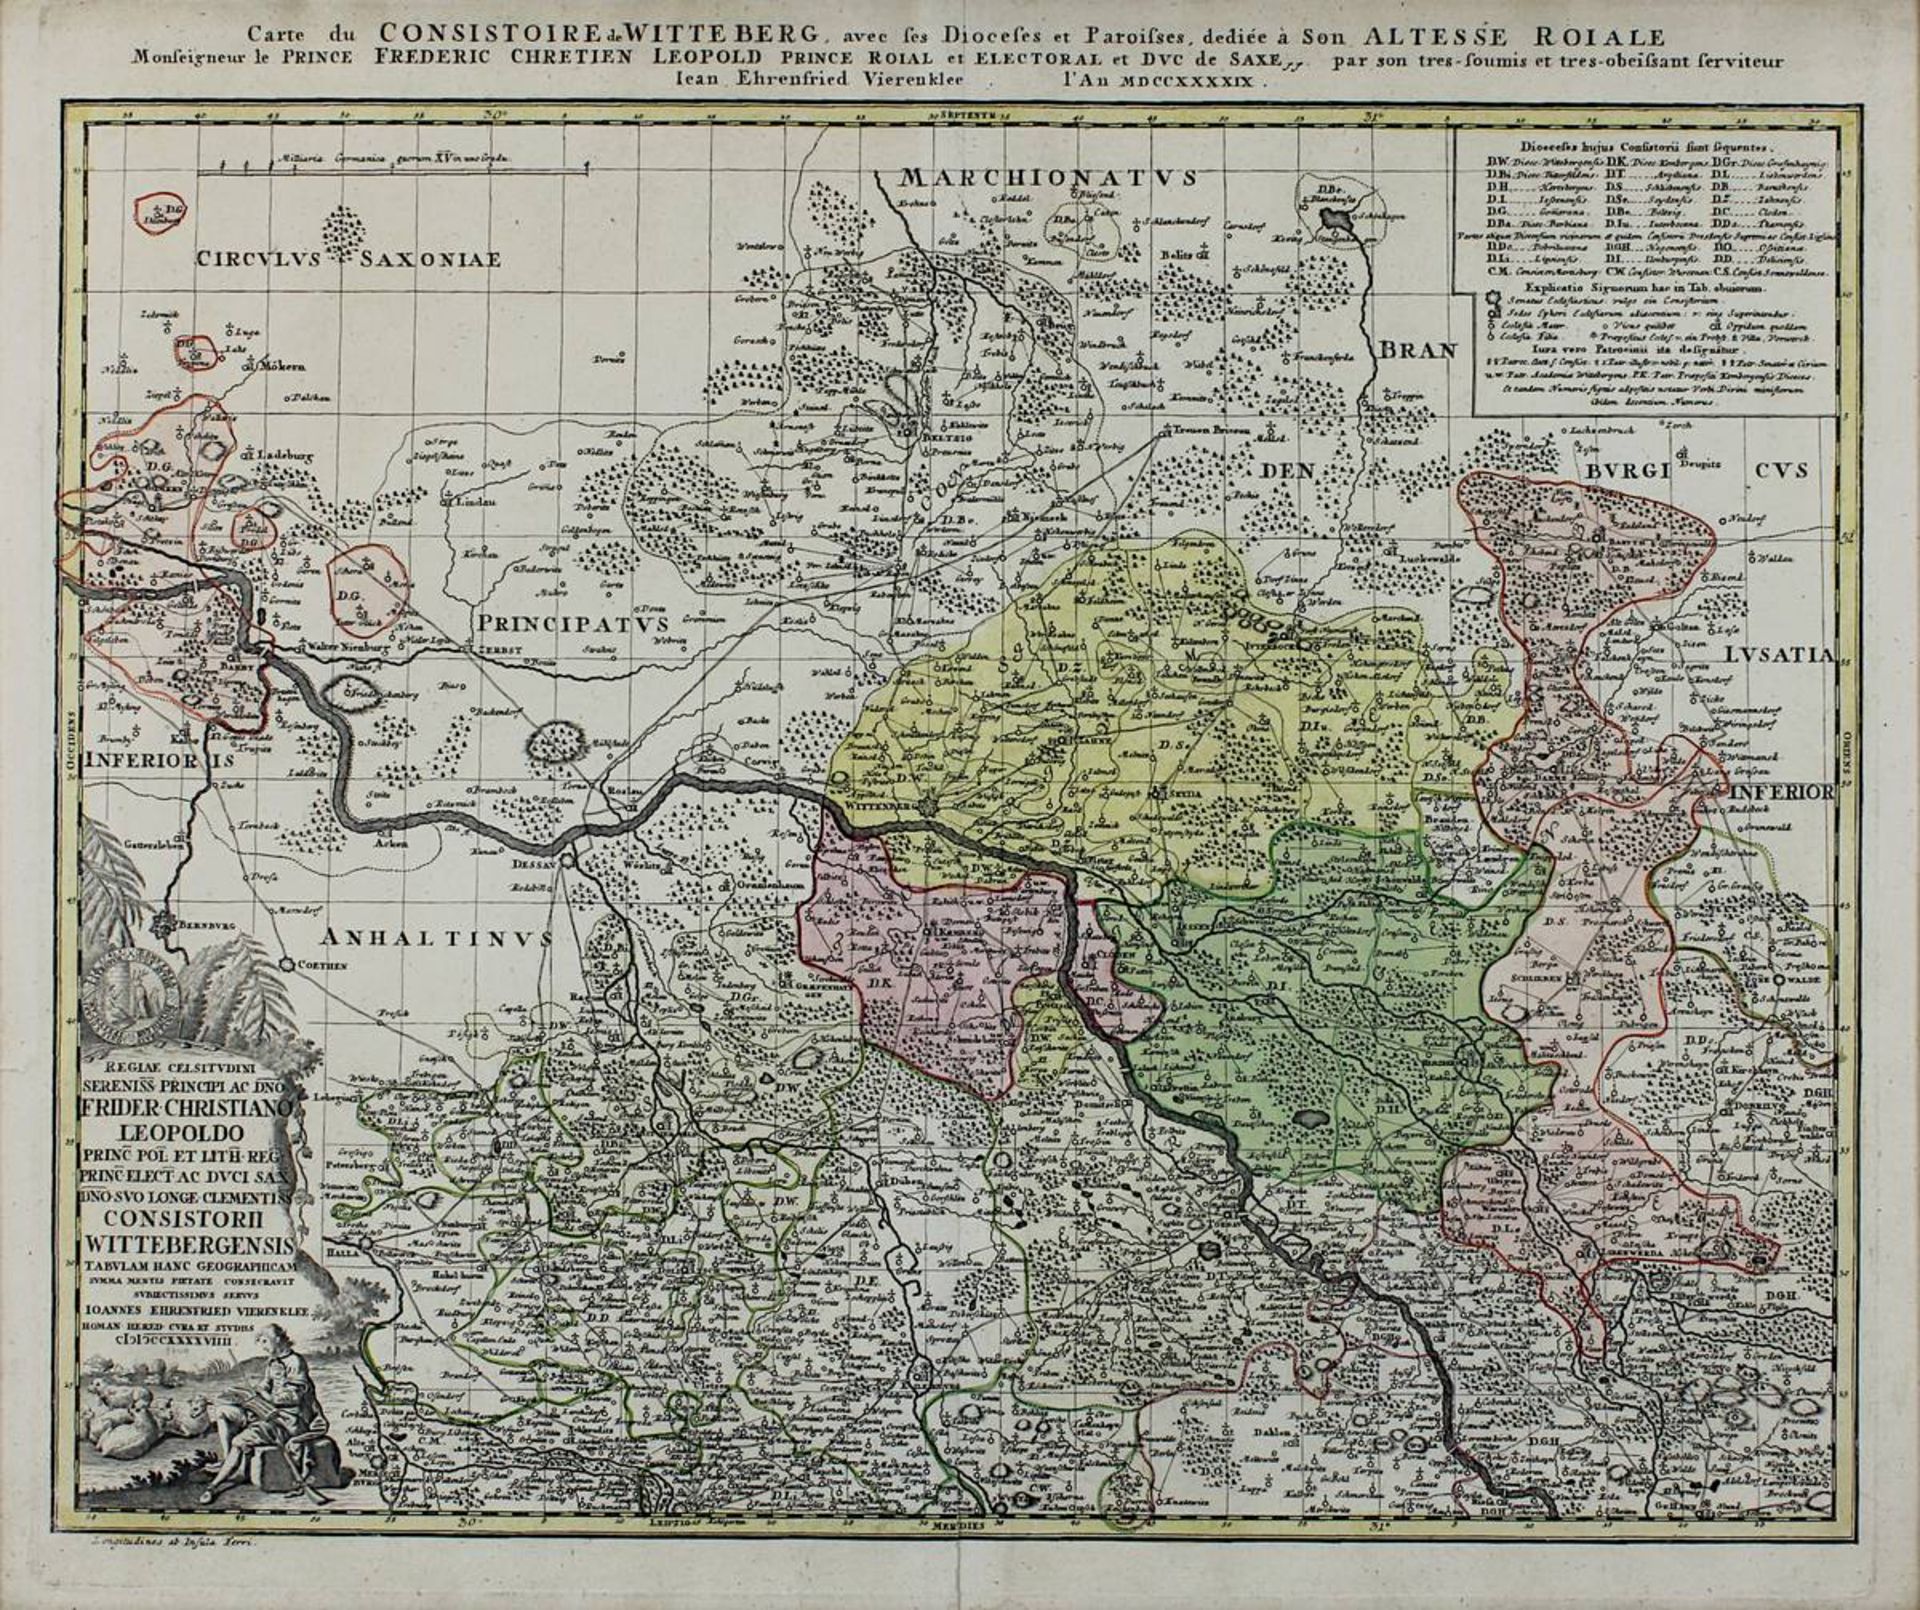 "Carte de Consistoire de Witteberg avec ses Dioceses et Paroisses ...", kolorierte - Image 2 of 2